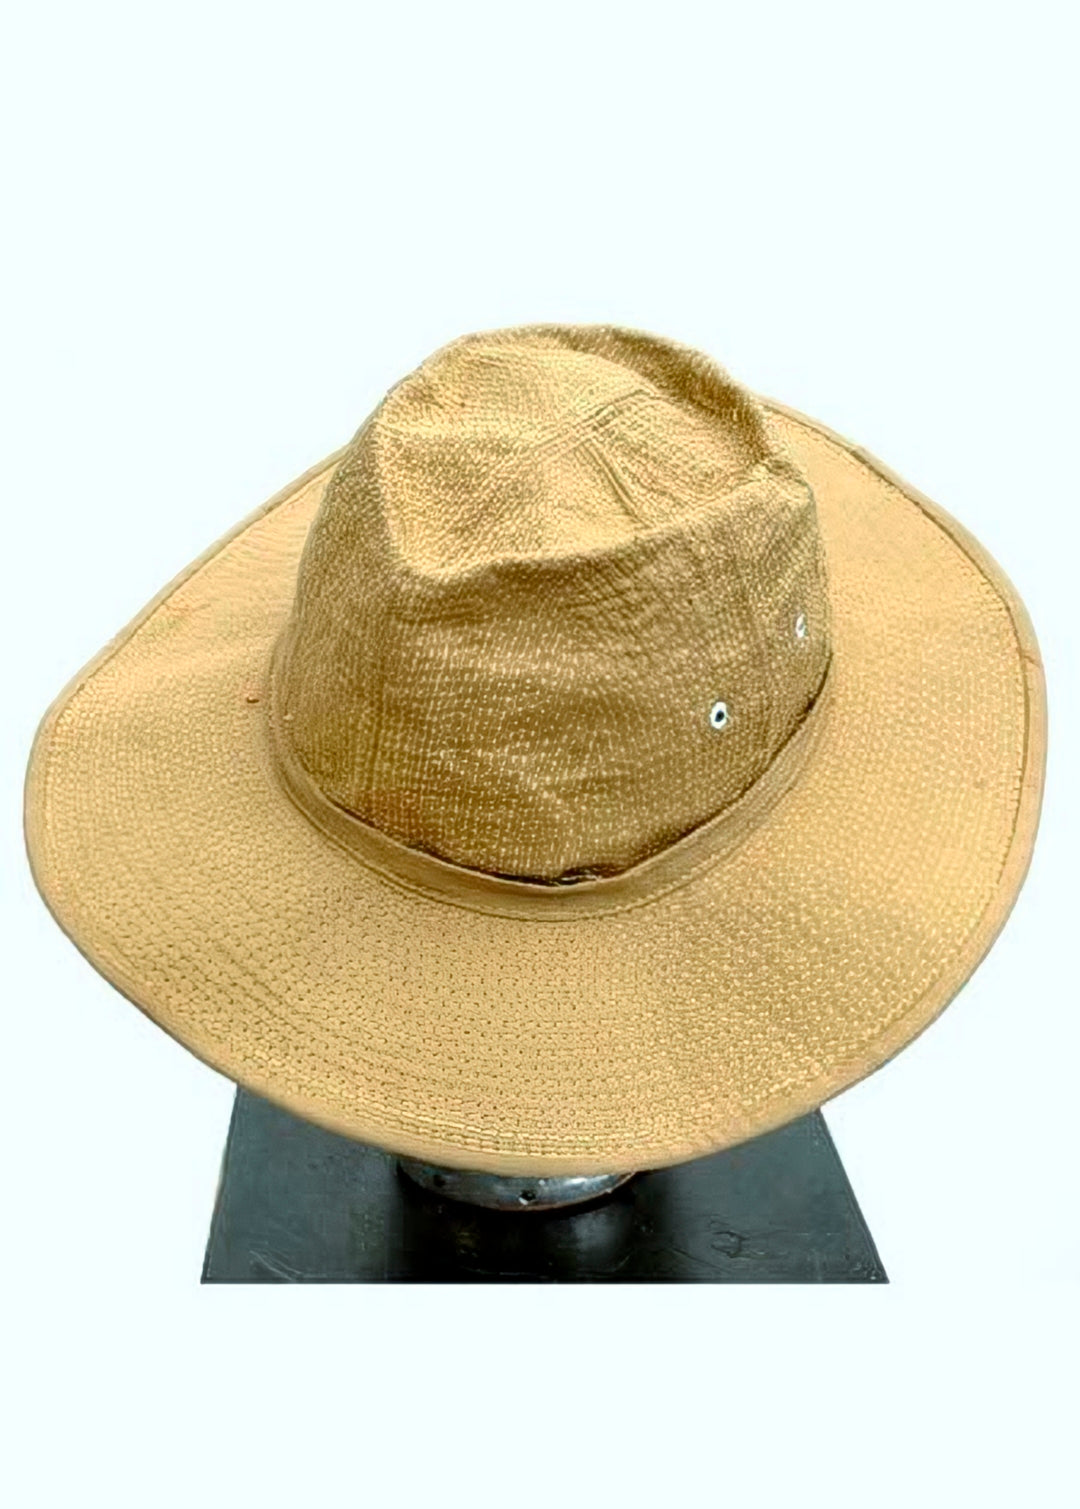 Vintage Canvas Outback Safari Adventurer Hat